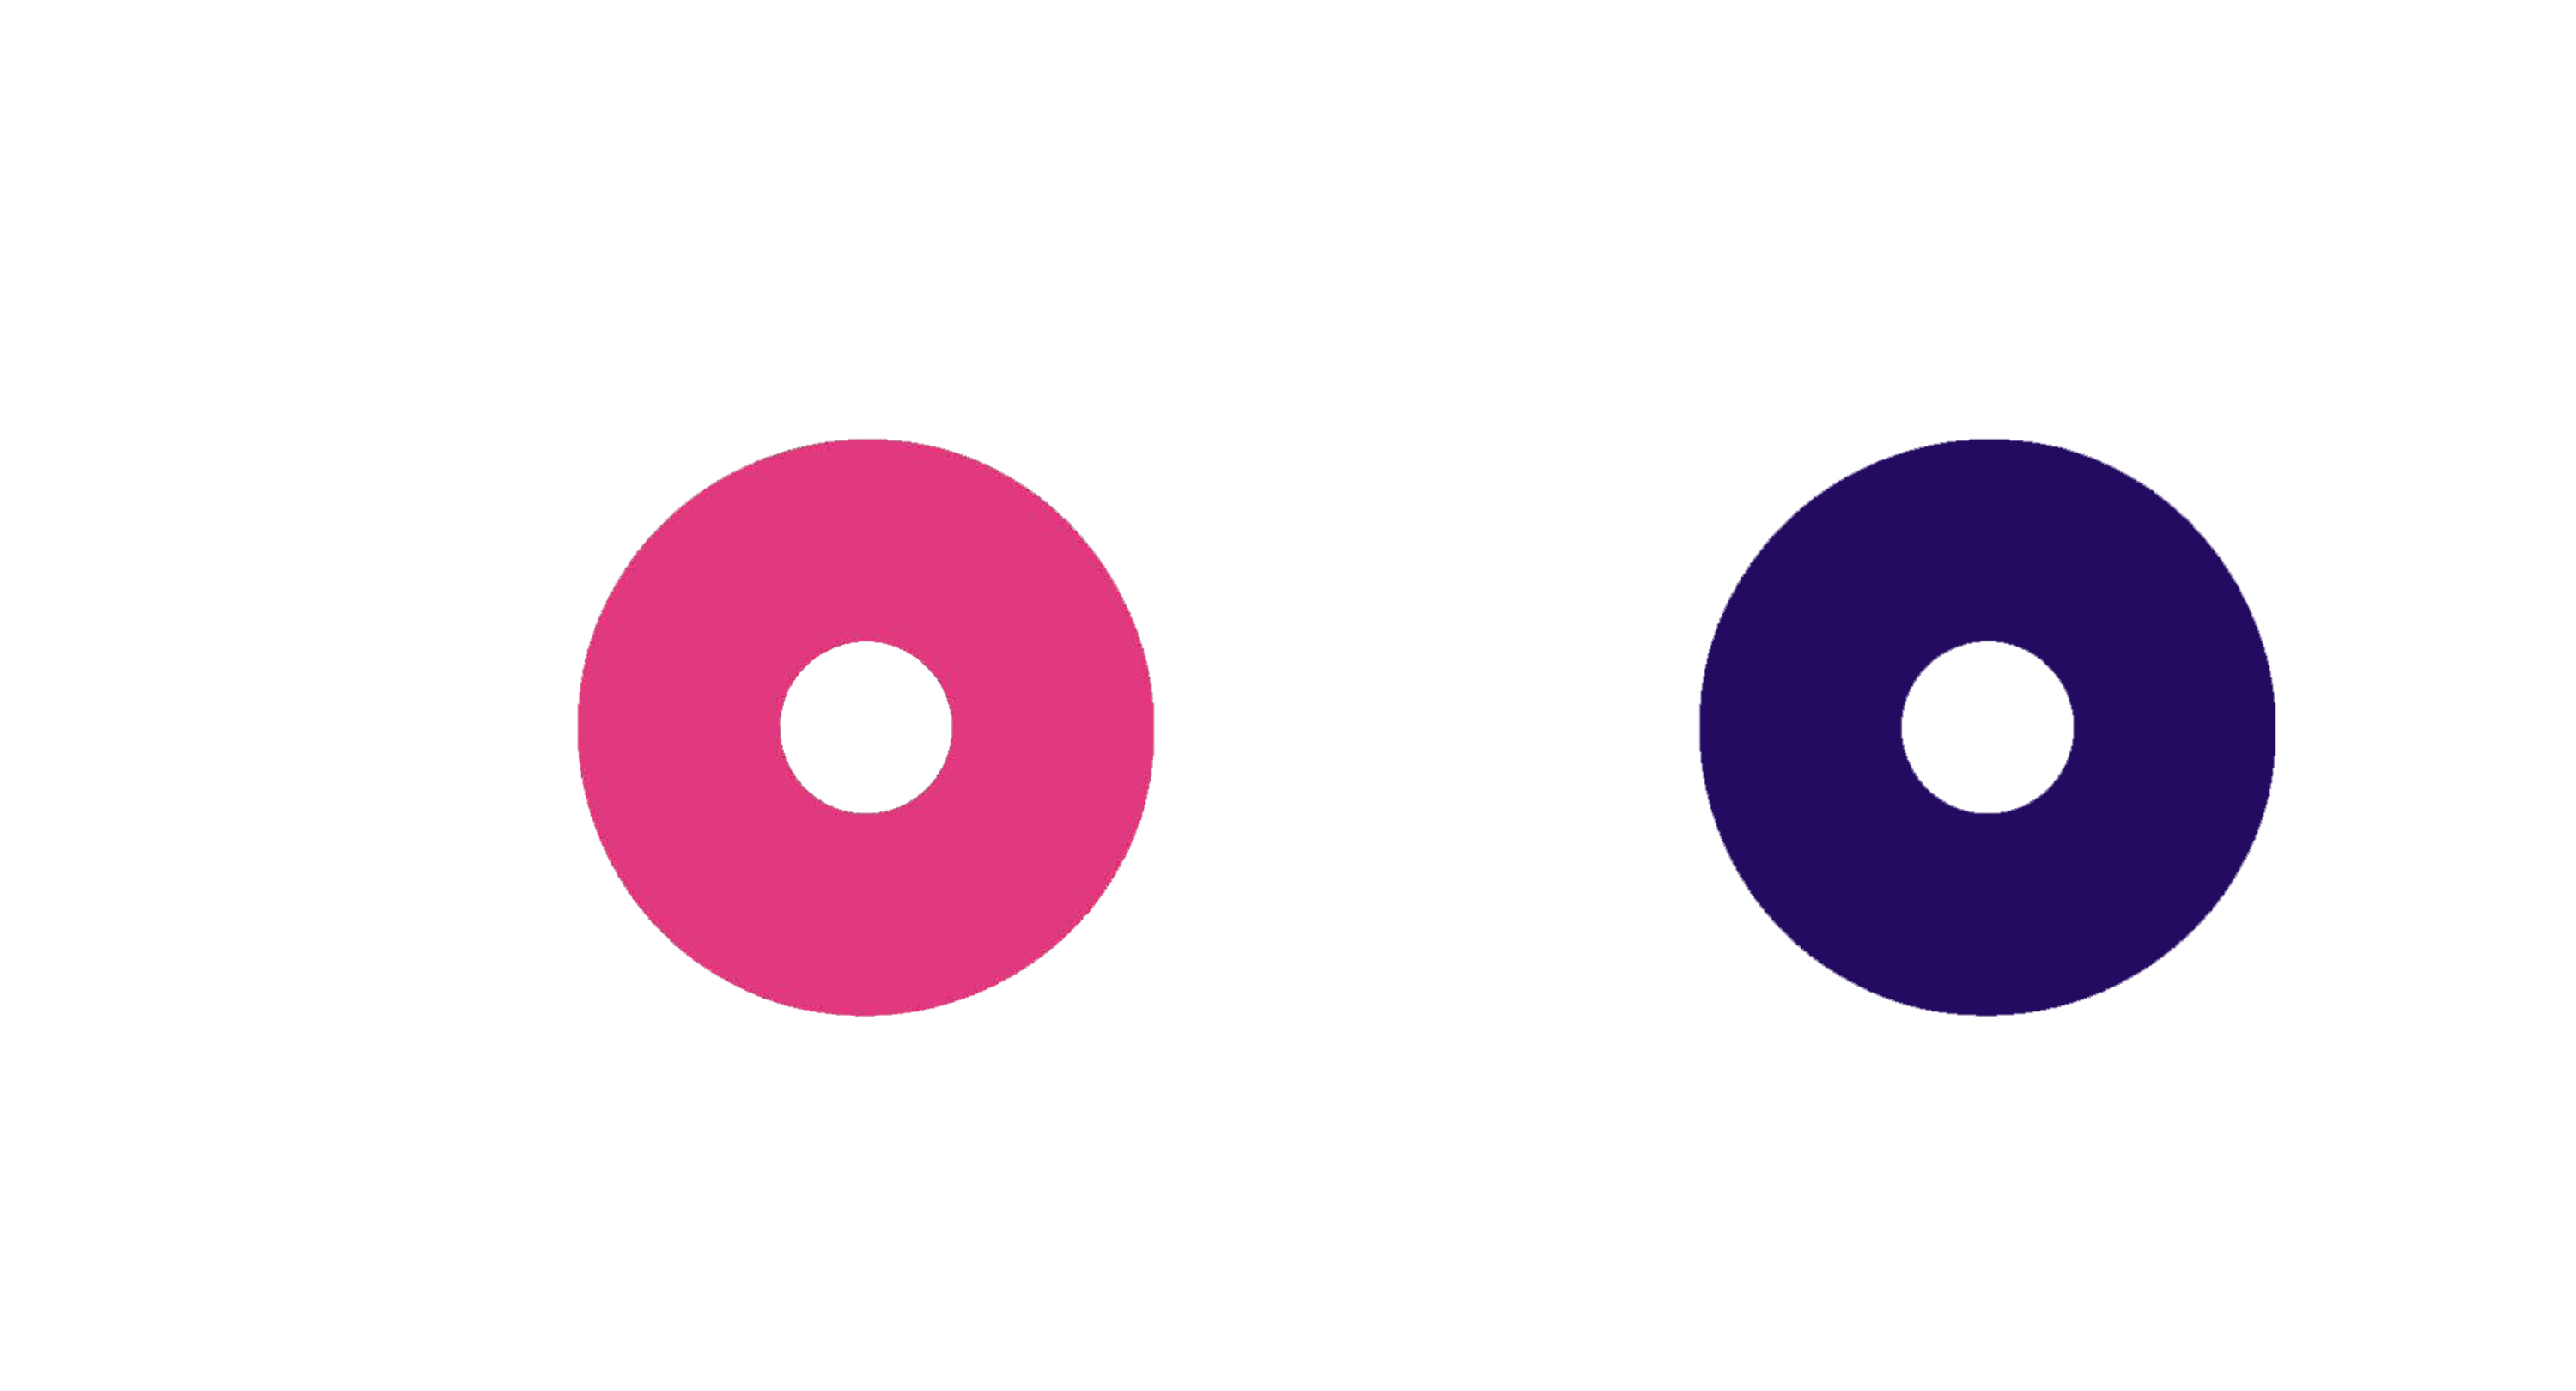 Yoyos – Modern Yoyos